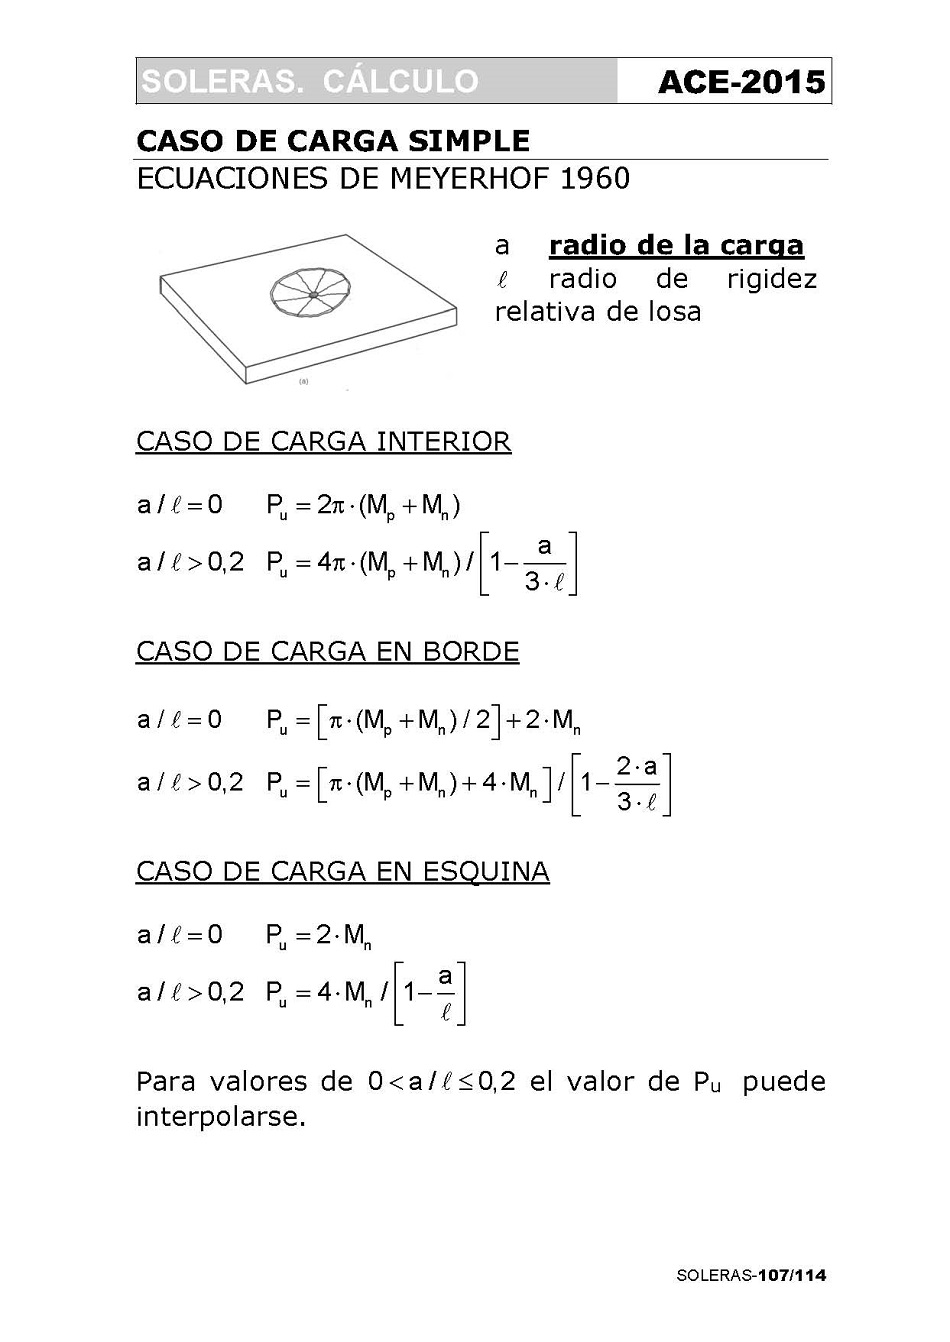 Cálculo de Soleras de Hormigón. Página 107